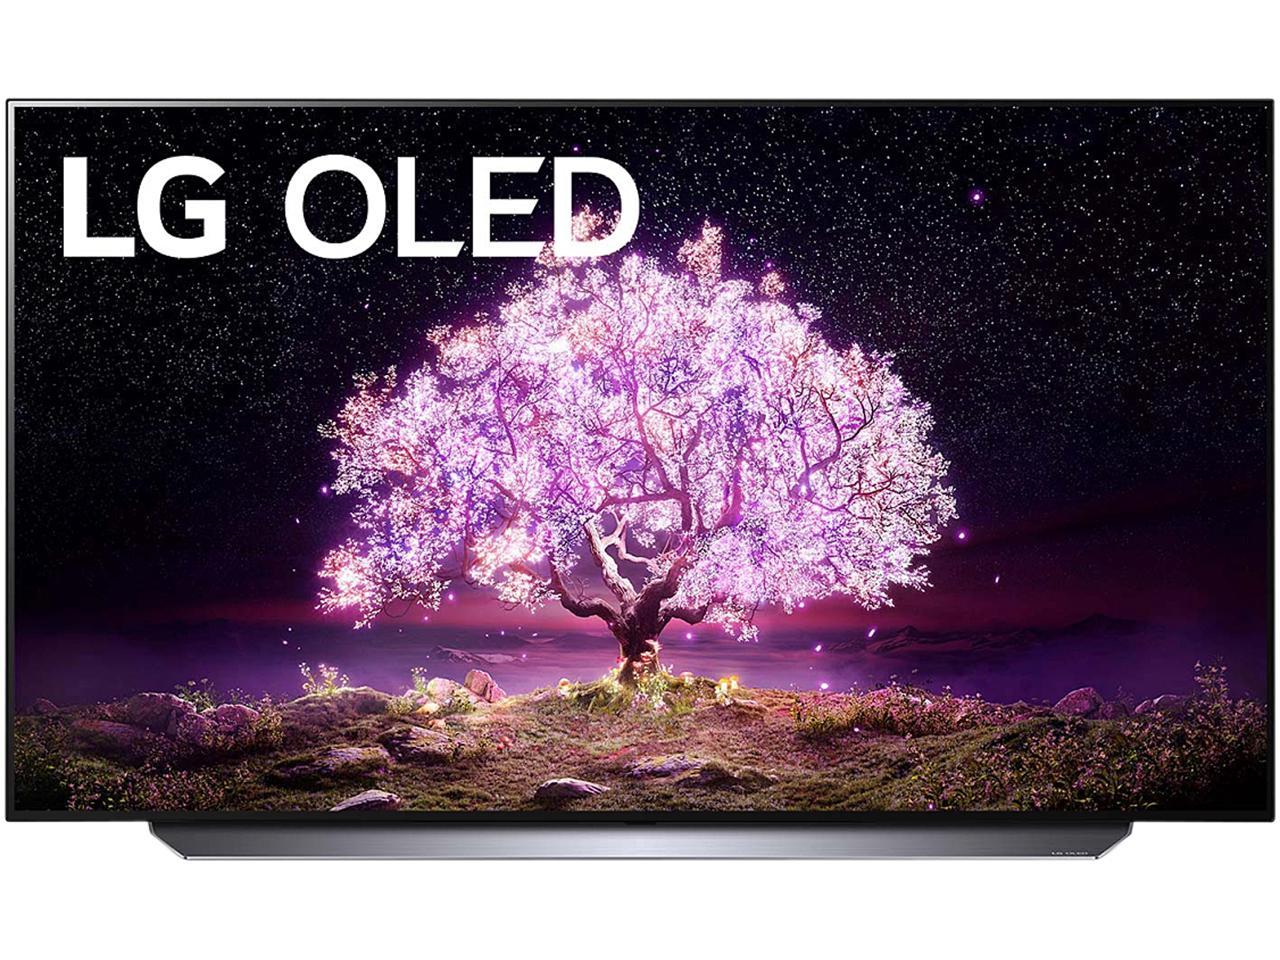 LG OLED65C1PUB 4K Smart OLED TV w/ AI ThinQ (2021) + $150 GC + 4yr Extended Wty $1597